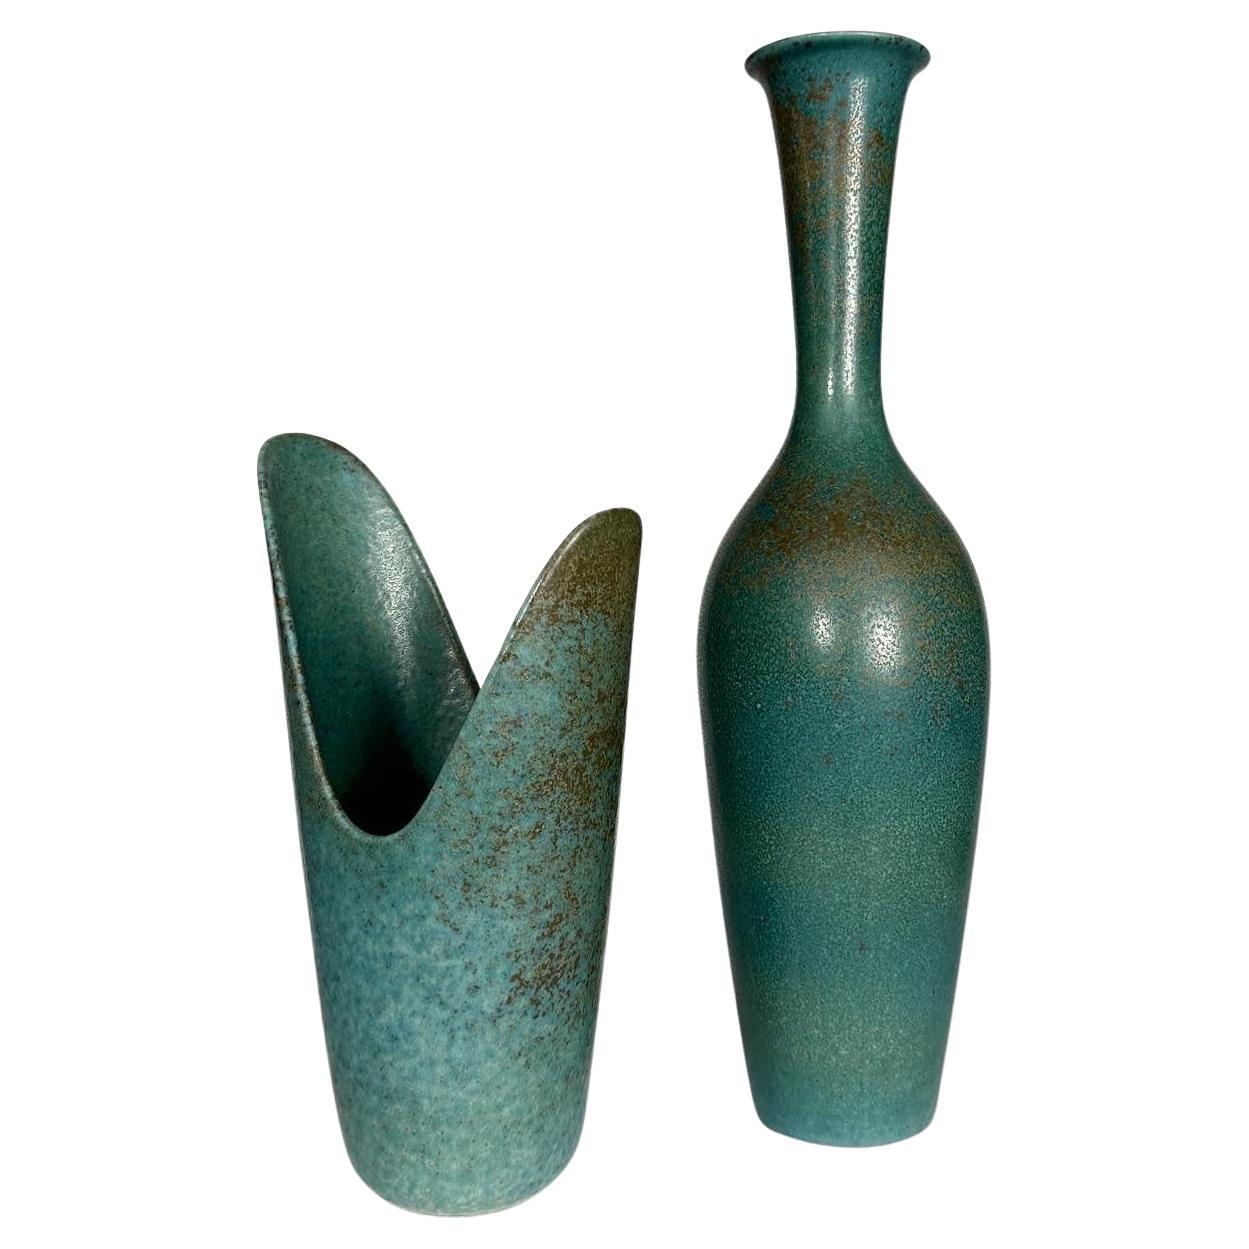 Vasen von Gunnar Nylund in einer seltenen türkisfarbenen Glasur mit braunen Flecken, handgedrehtes Steinzeug, hergestellt in der Fabrik in Rörstrand in den 1950er Jahren. 1. Qualität Sortierung.

Links
Vase 